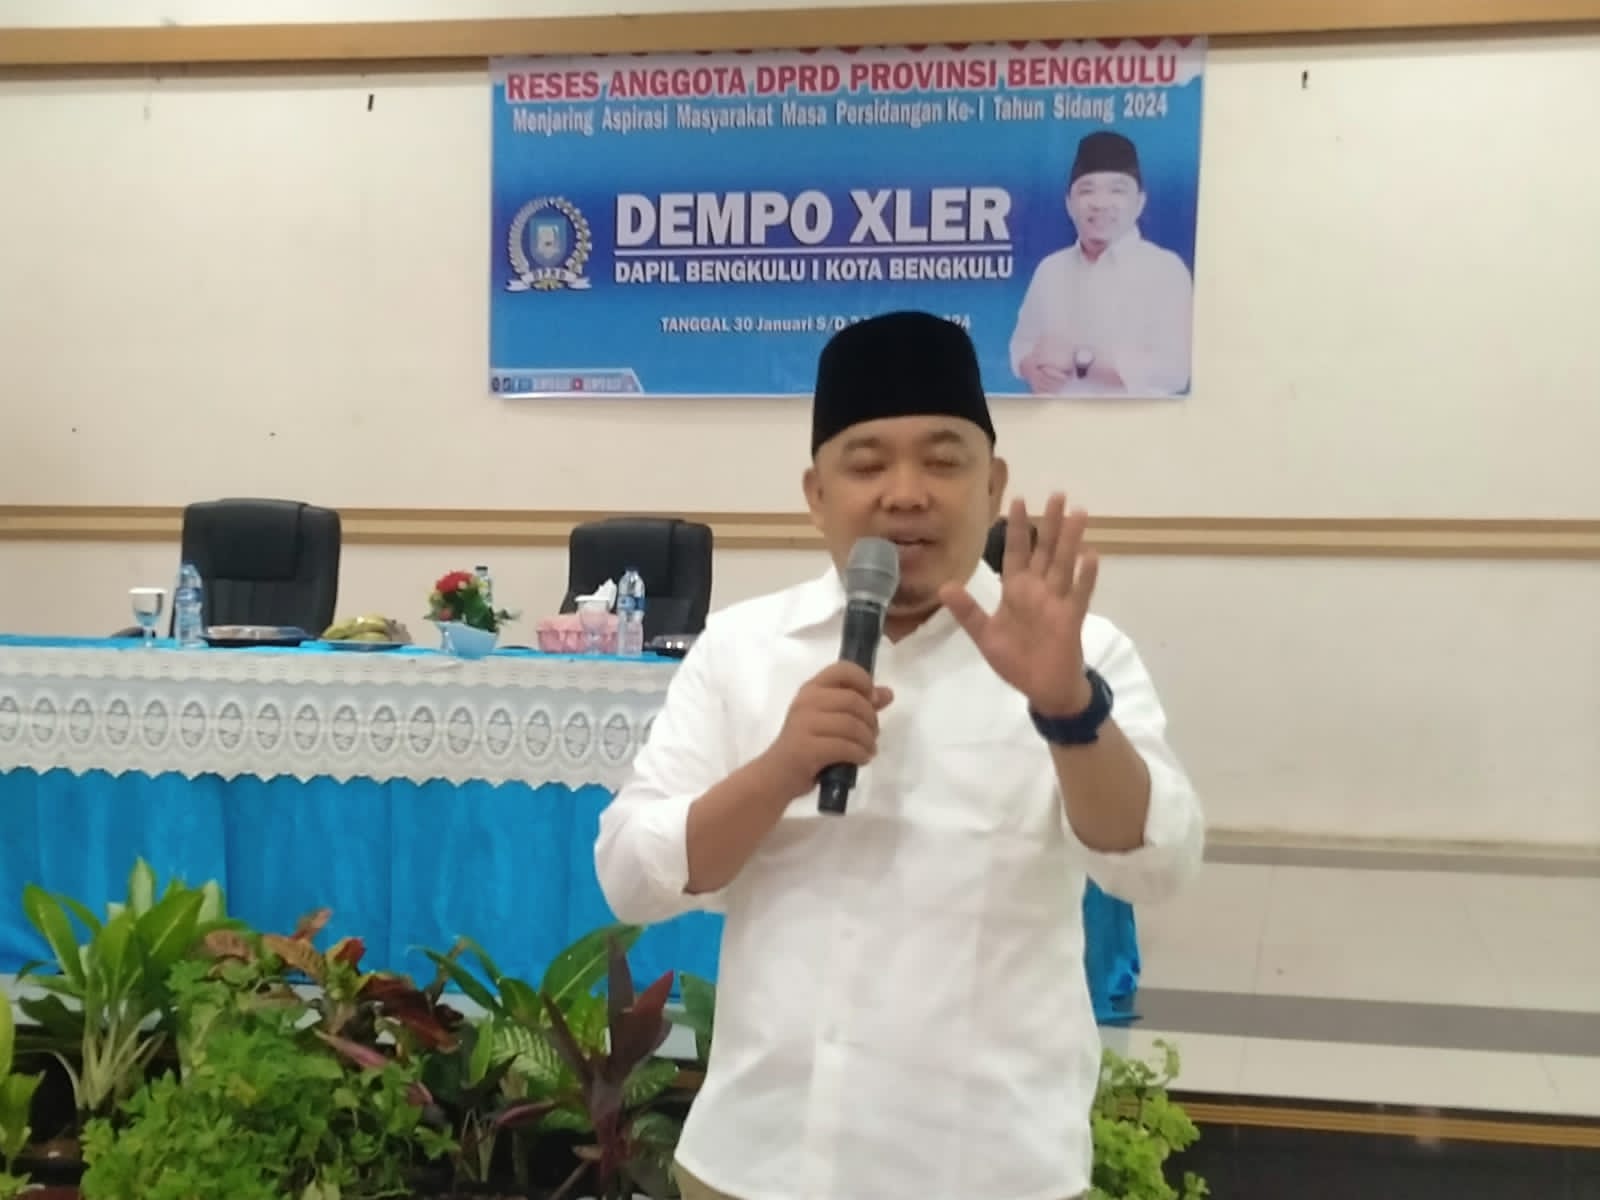 Dapil Kota Bengkulu, PAN Yakin Dapat 2 Kursi DPRD Provinsi Bengkulu, Dempo dan Dwi?